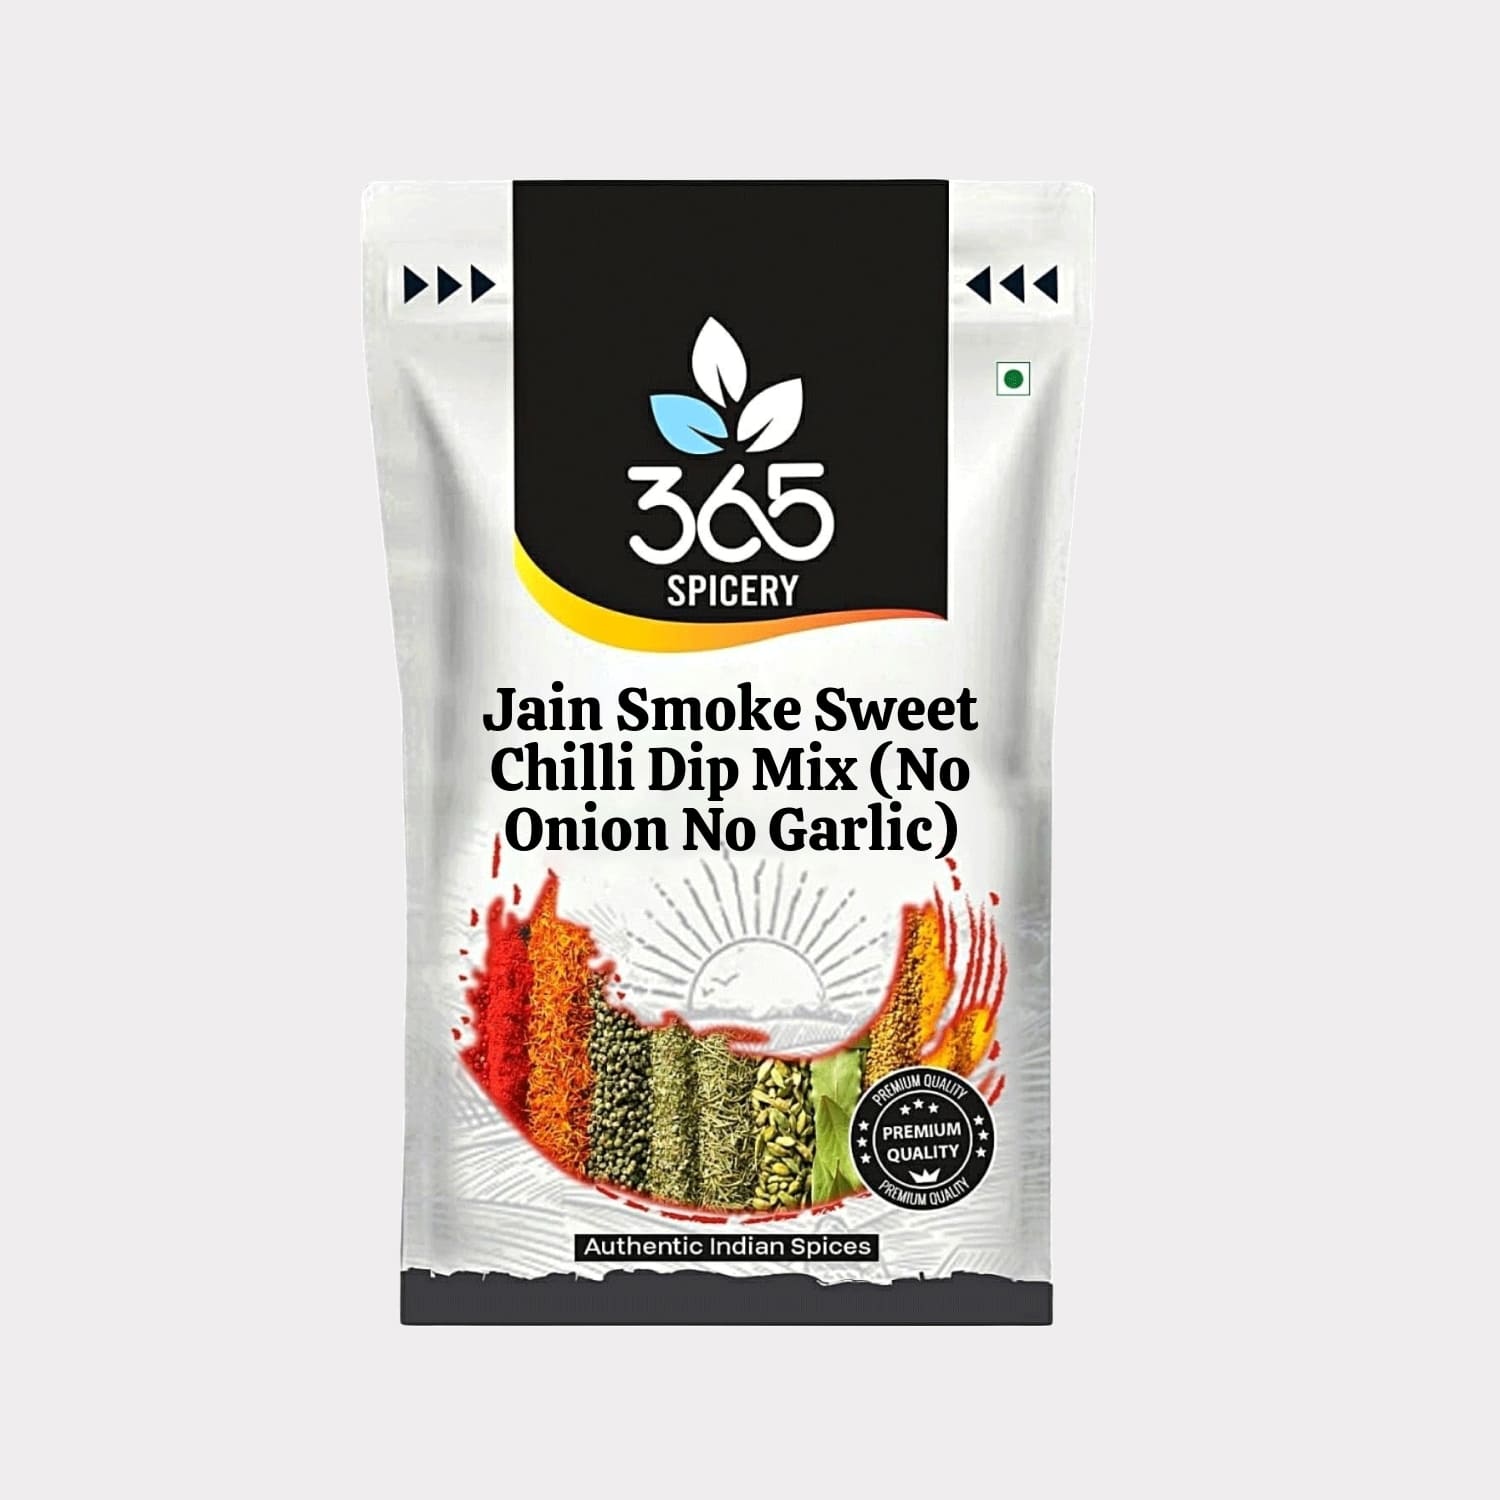 Jain Smoke Sweet Chilli Dip Mix (No Onion No Garlic)